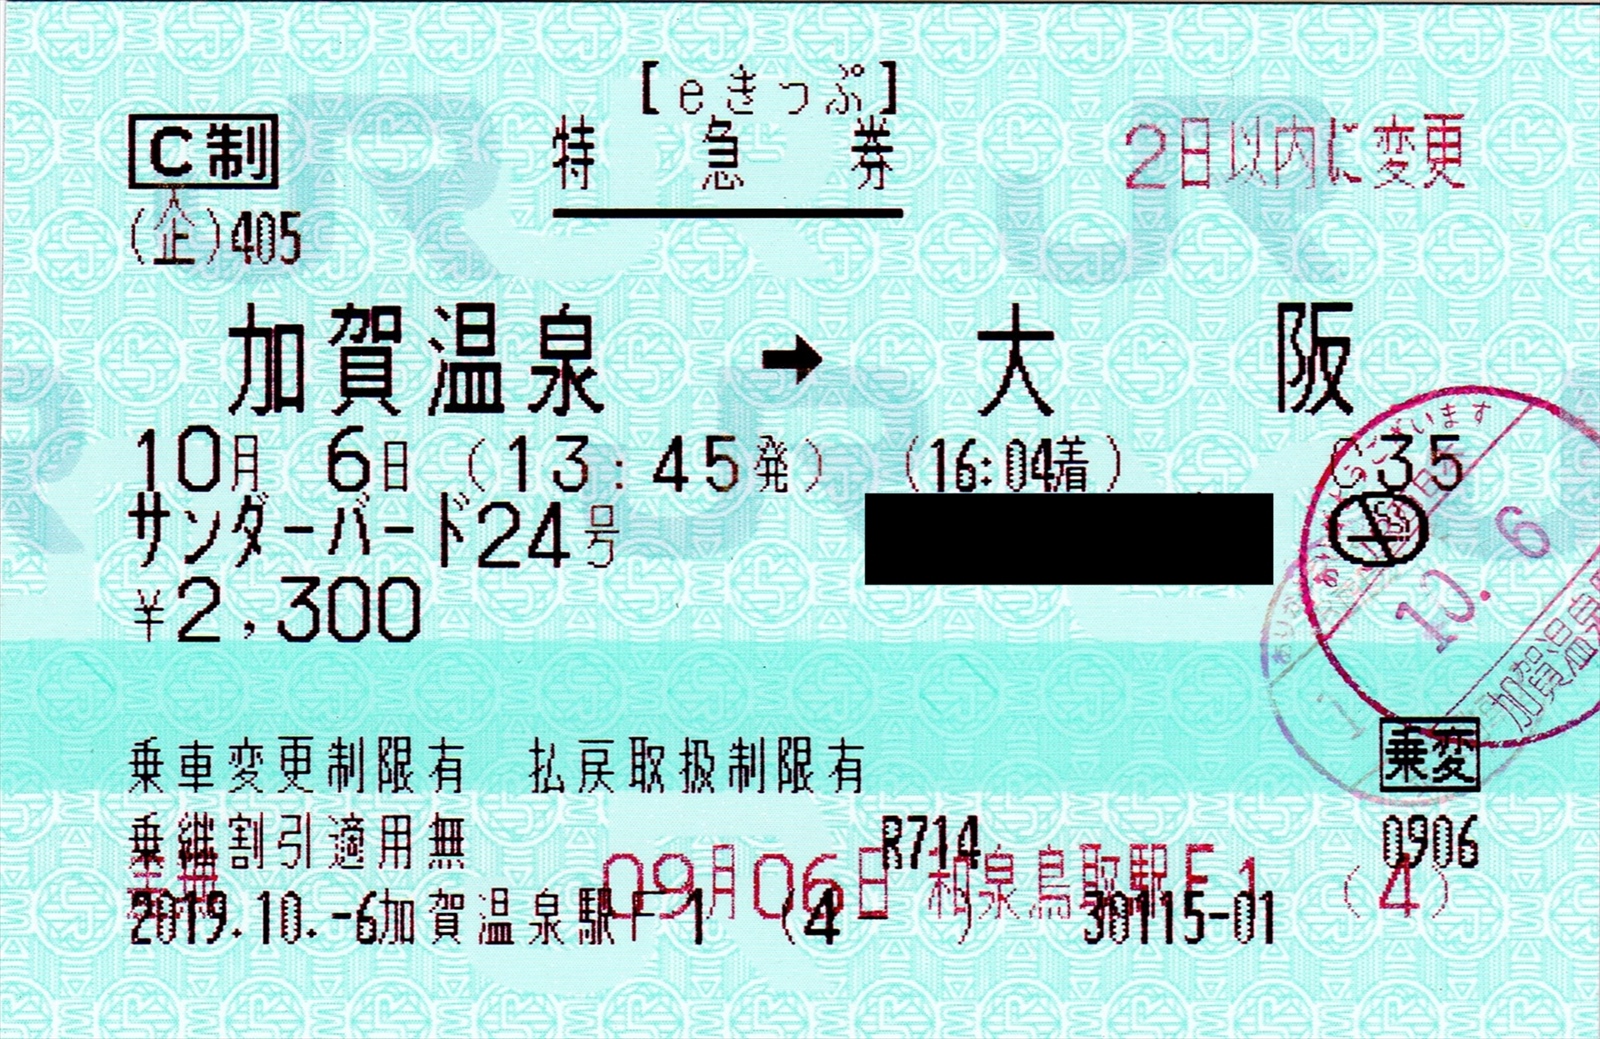 阪和線の沿線から Jr西日本 Eきっぷ 発券後に乗車変更を行った特急券のご紹介 料金改定前後の購入による券面の違いもご紹介